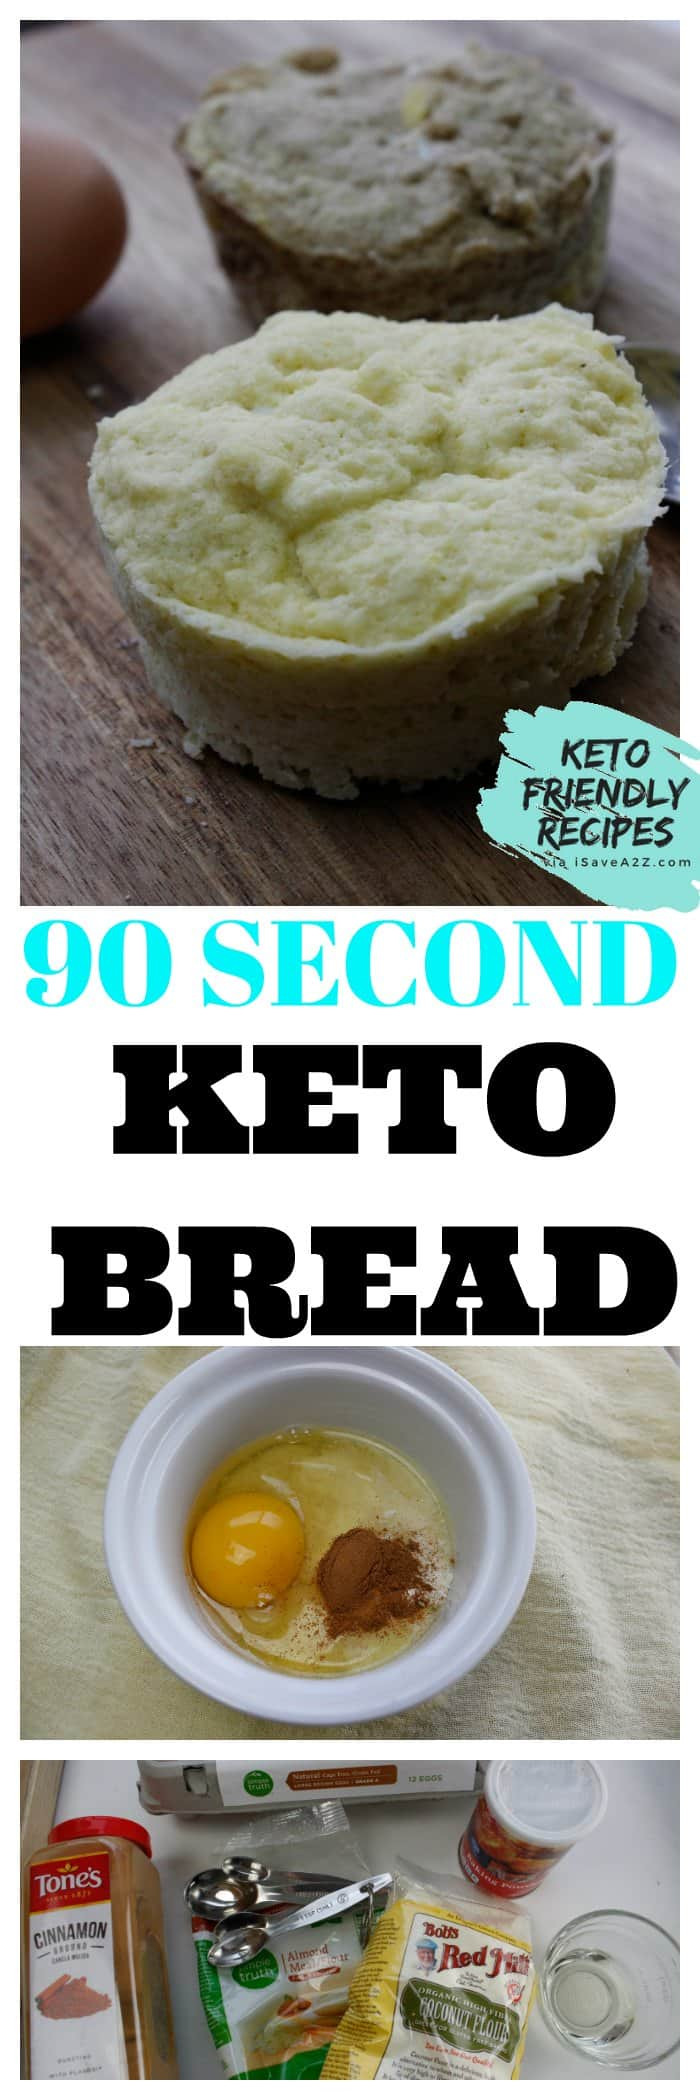 90 Second Vegan Keto Bread
 DELICIOUS Keto 90 Second Bread Recipe iSaveA2Z